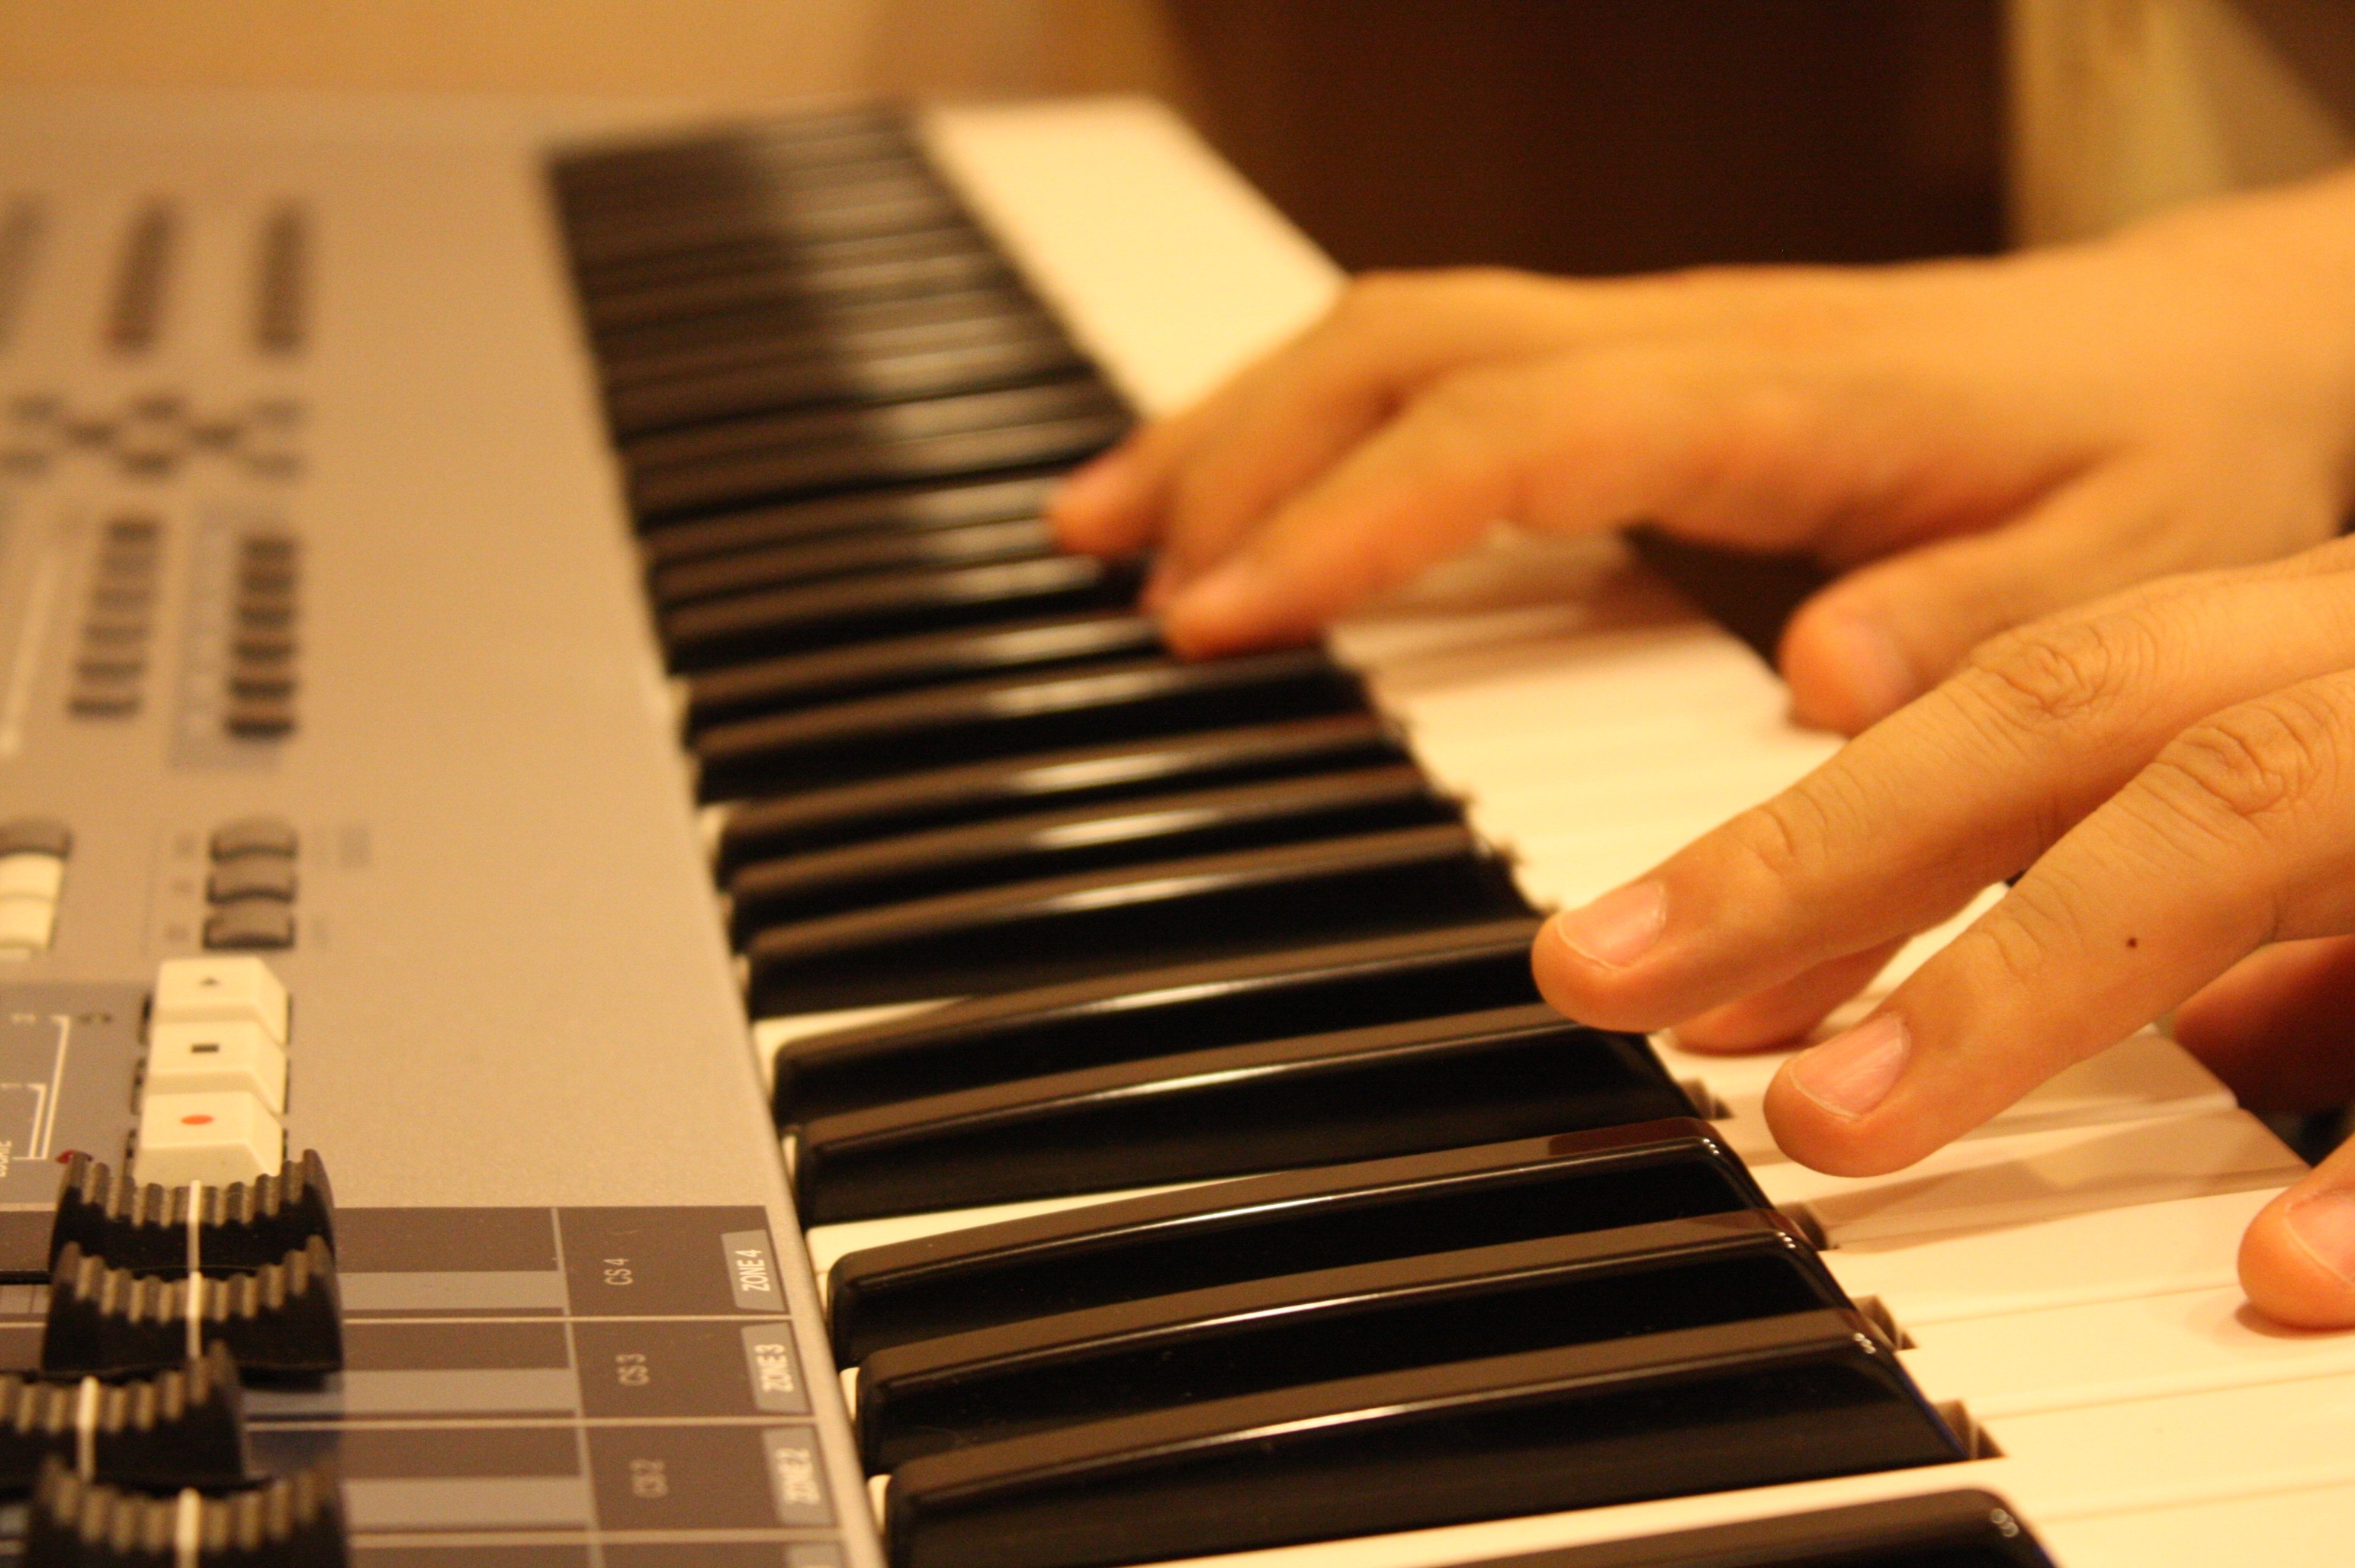 Hands music. Фортепиано. Руки на фортепиано. Игра на фортепиано. Пианино музыкальный инструмент.